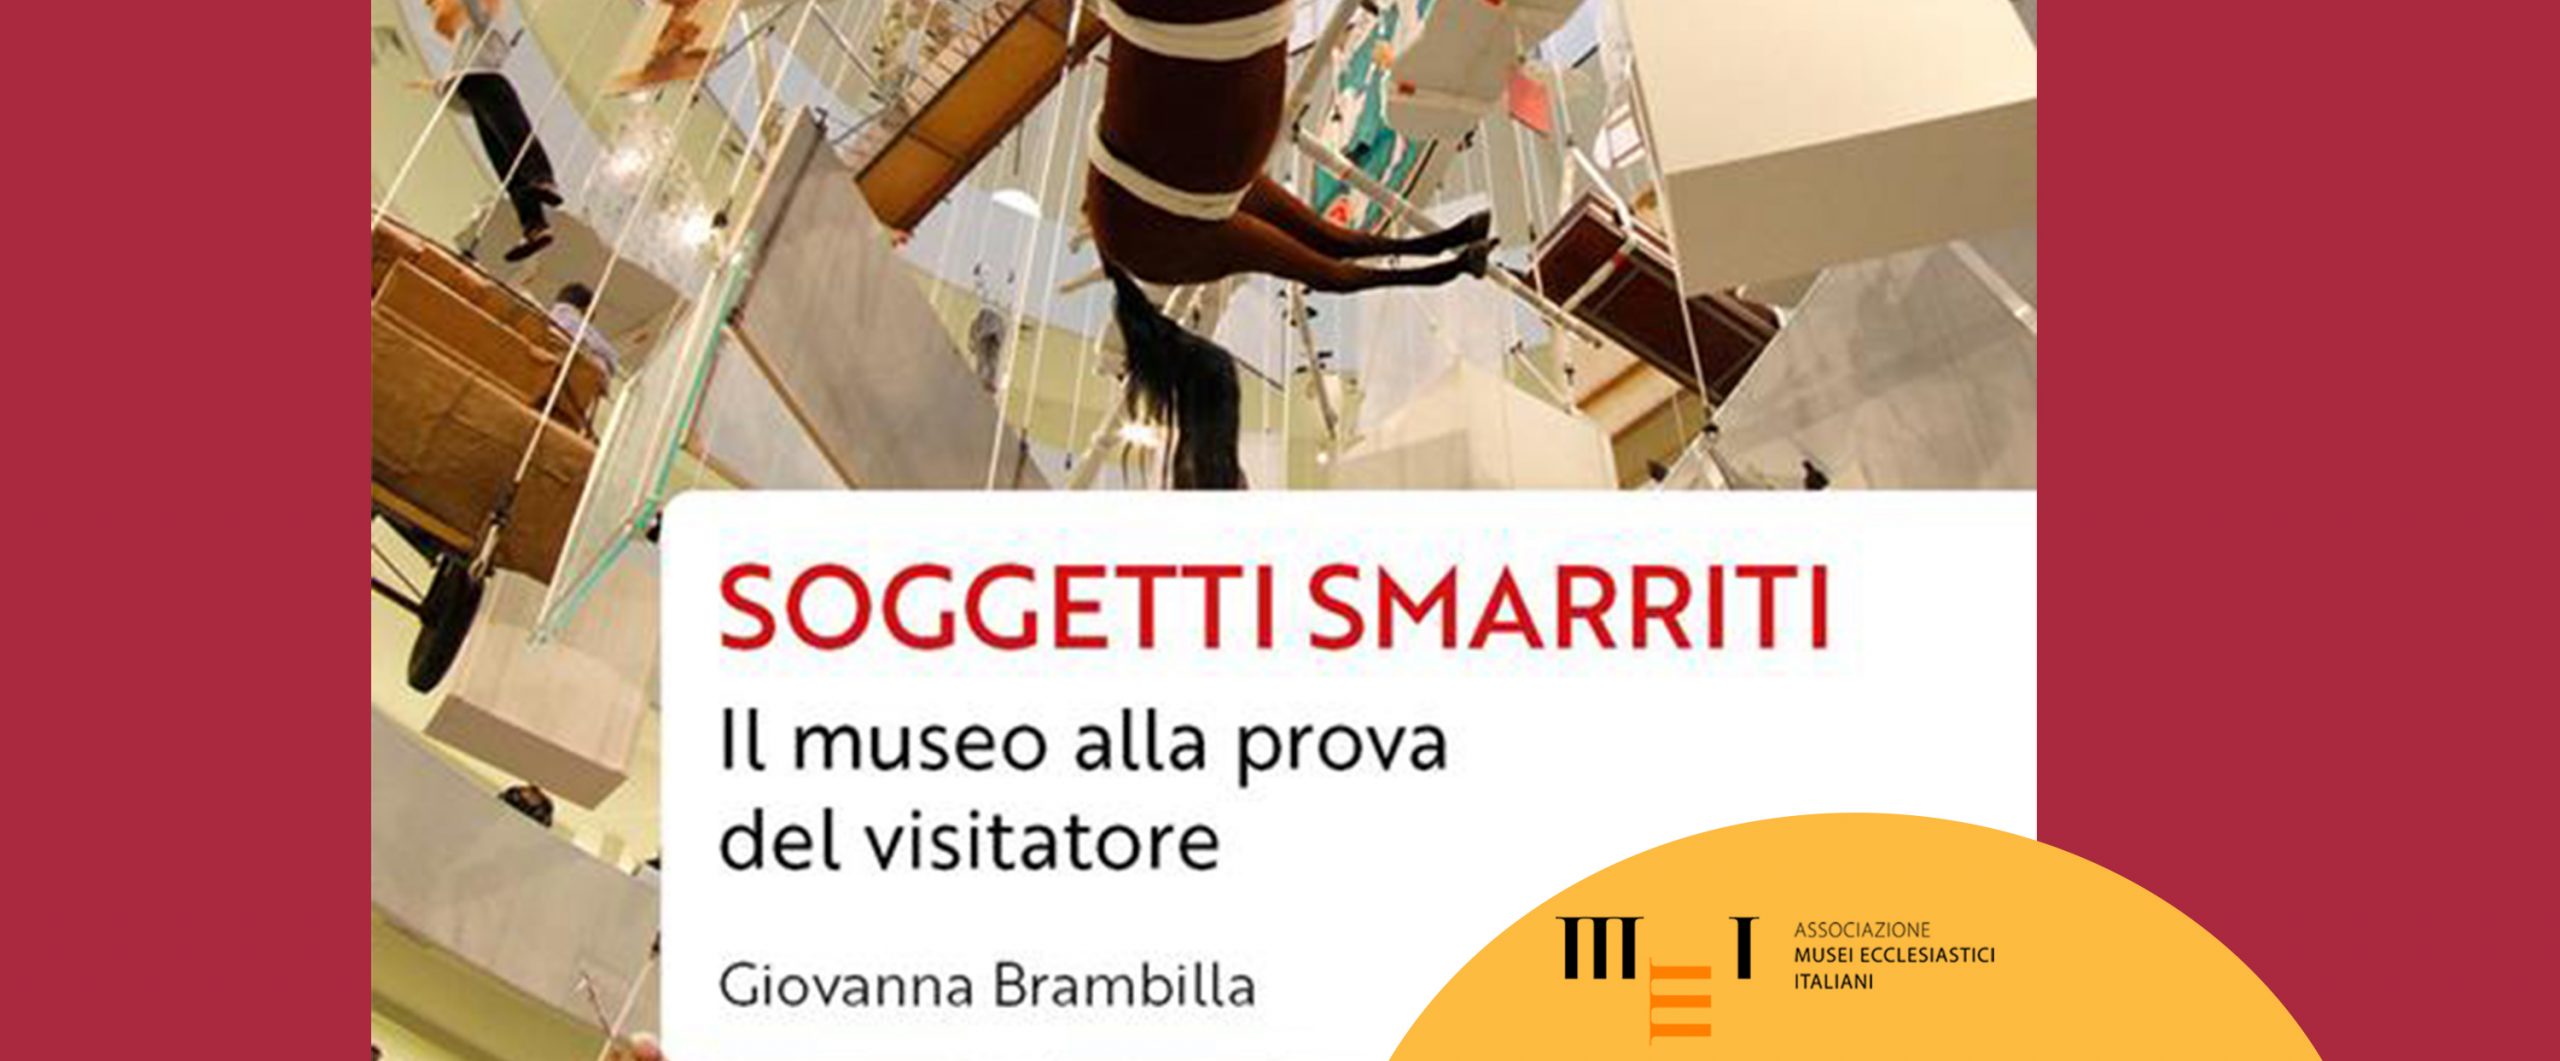 Soggetti smarriti: il museo alla prova del visitatore, di Giovanna Brambilla